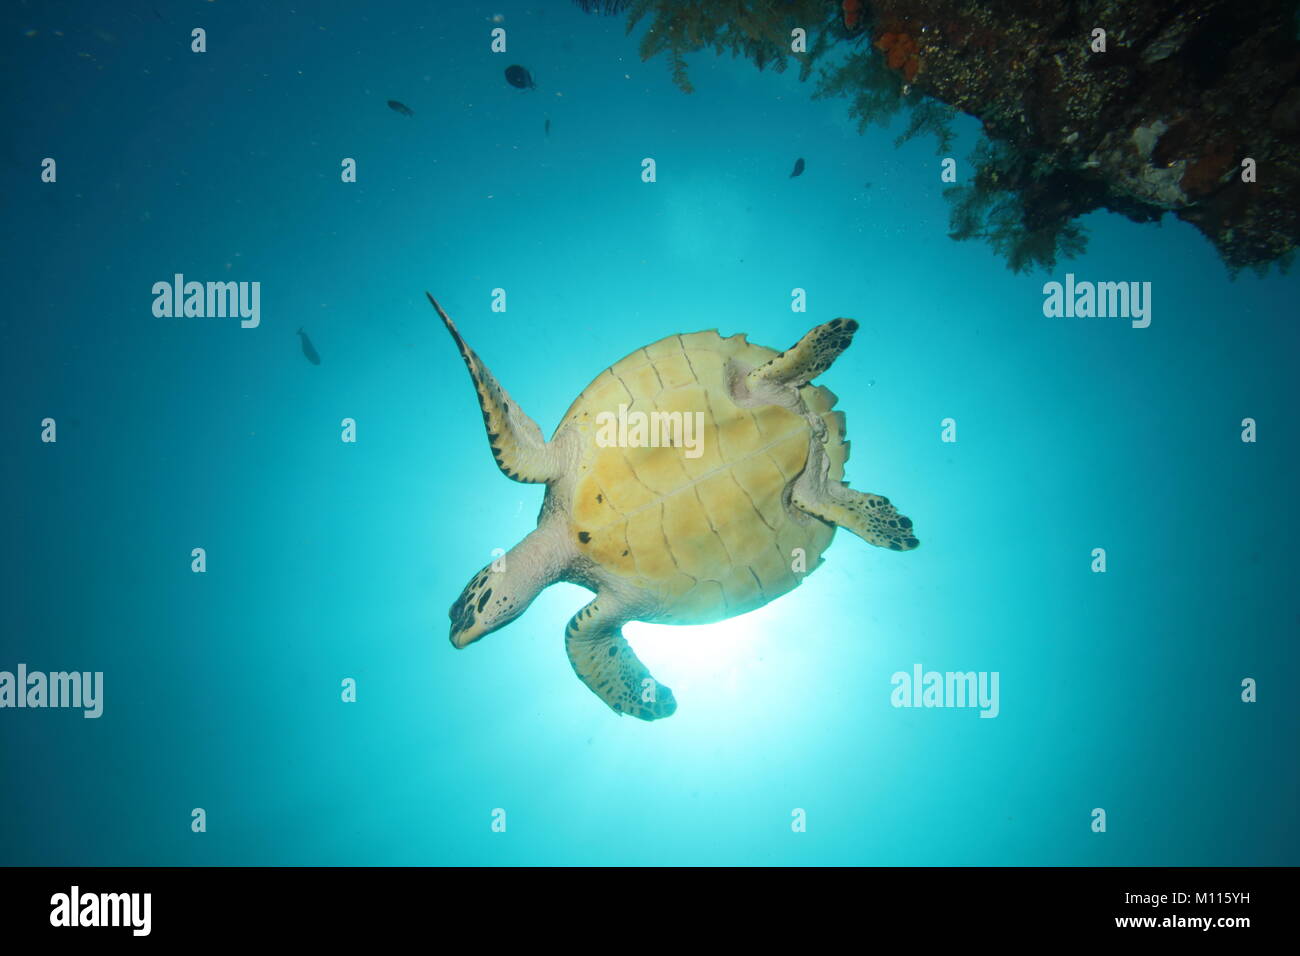 Resultado de imagen para unas tortugas desde abajo